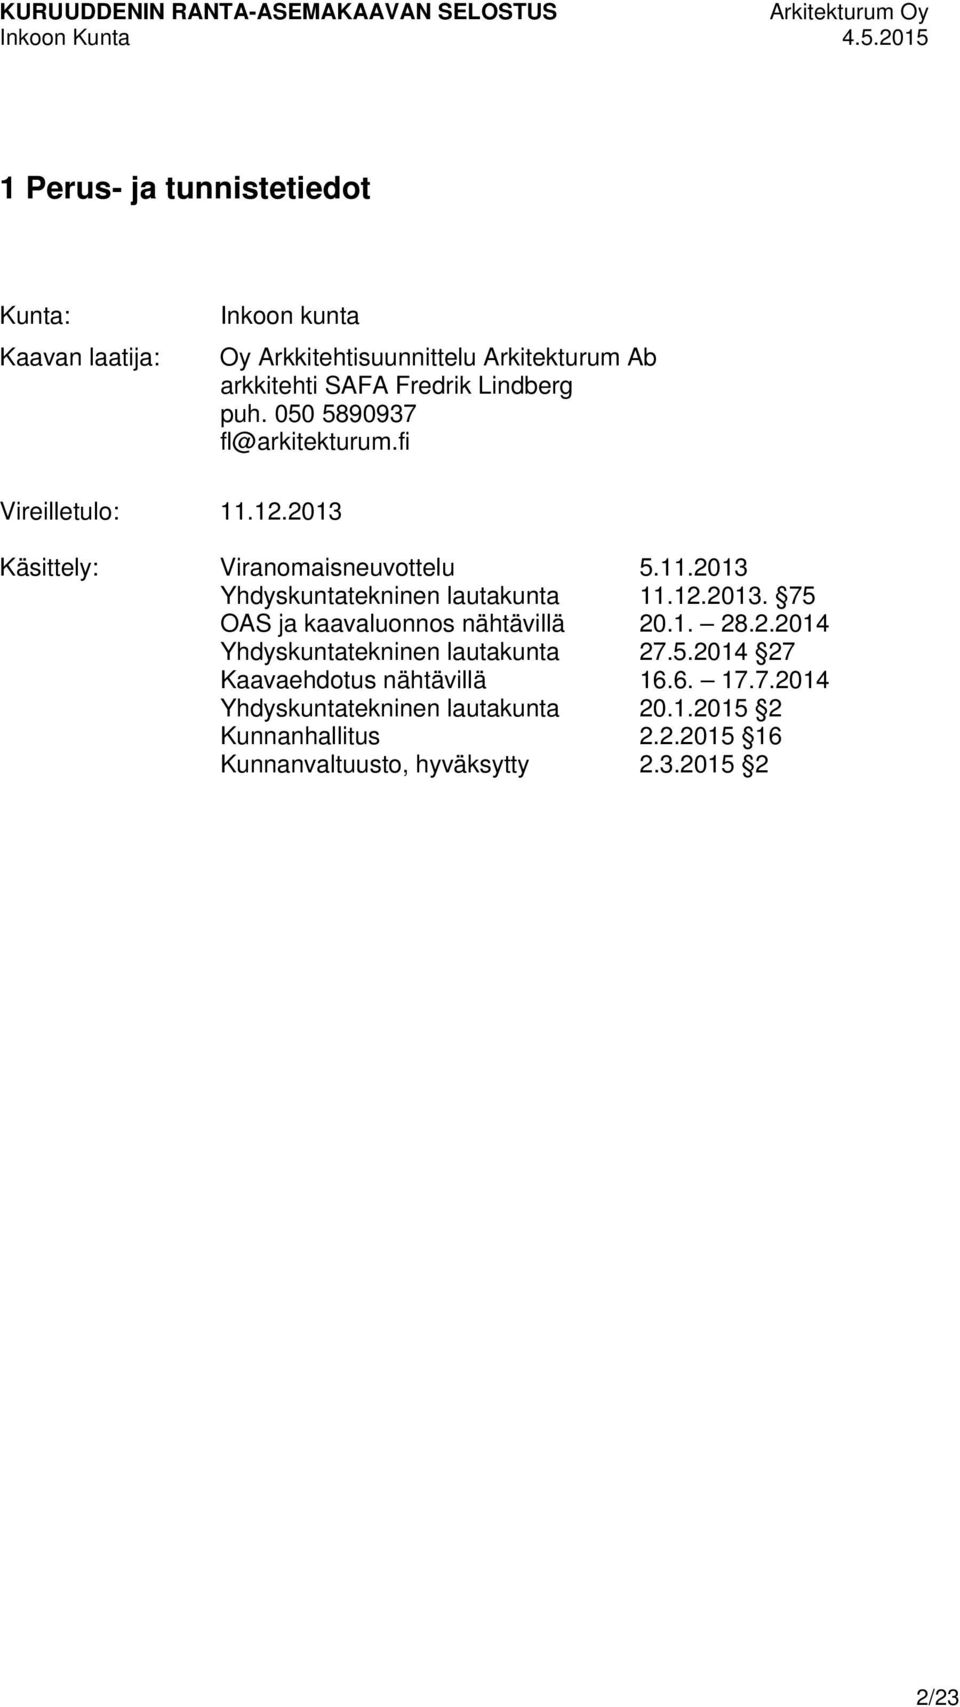 050 5890937 fl@arkitekturum.fi Vireilletulo: 11.12.2013 Käsittely: Viranomaisneuvottelu 5.11.2013 Yhdyskuntatekninen lautakunta 11.12.2013. 75 OAS ja kaavaluonnos nähtävillä 20.